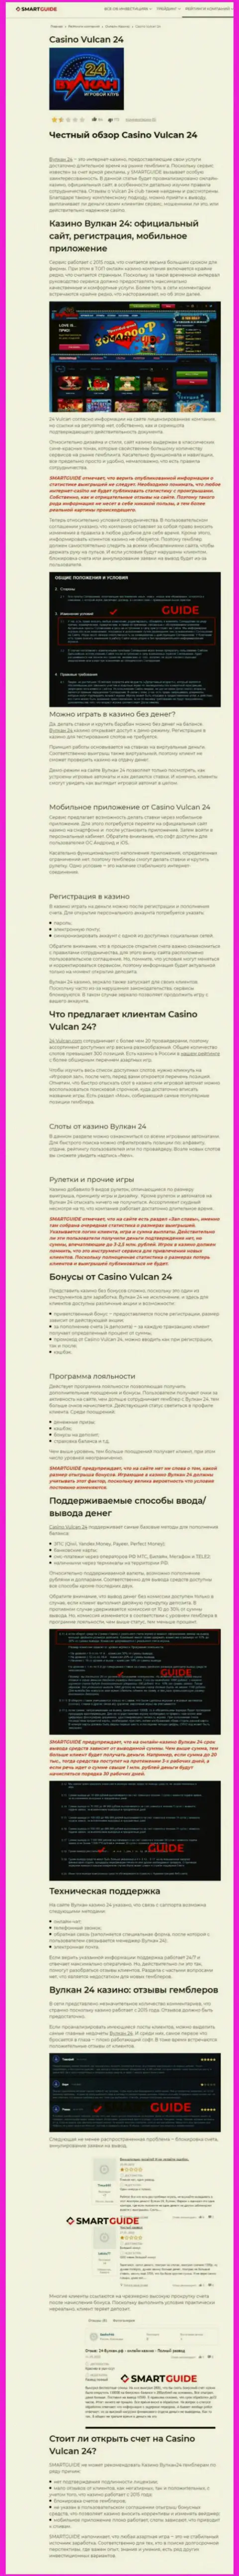 Вулкан-24 Ком - это организация, зарабатывающая на воровстве финансовых активов собственных реальных клиентов (обзор проделок)